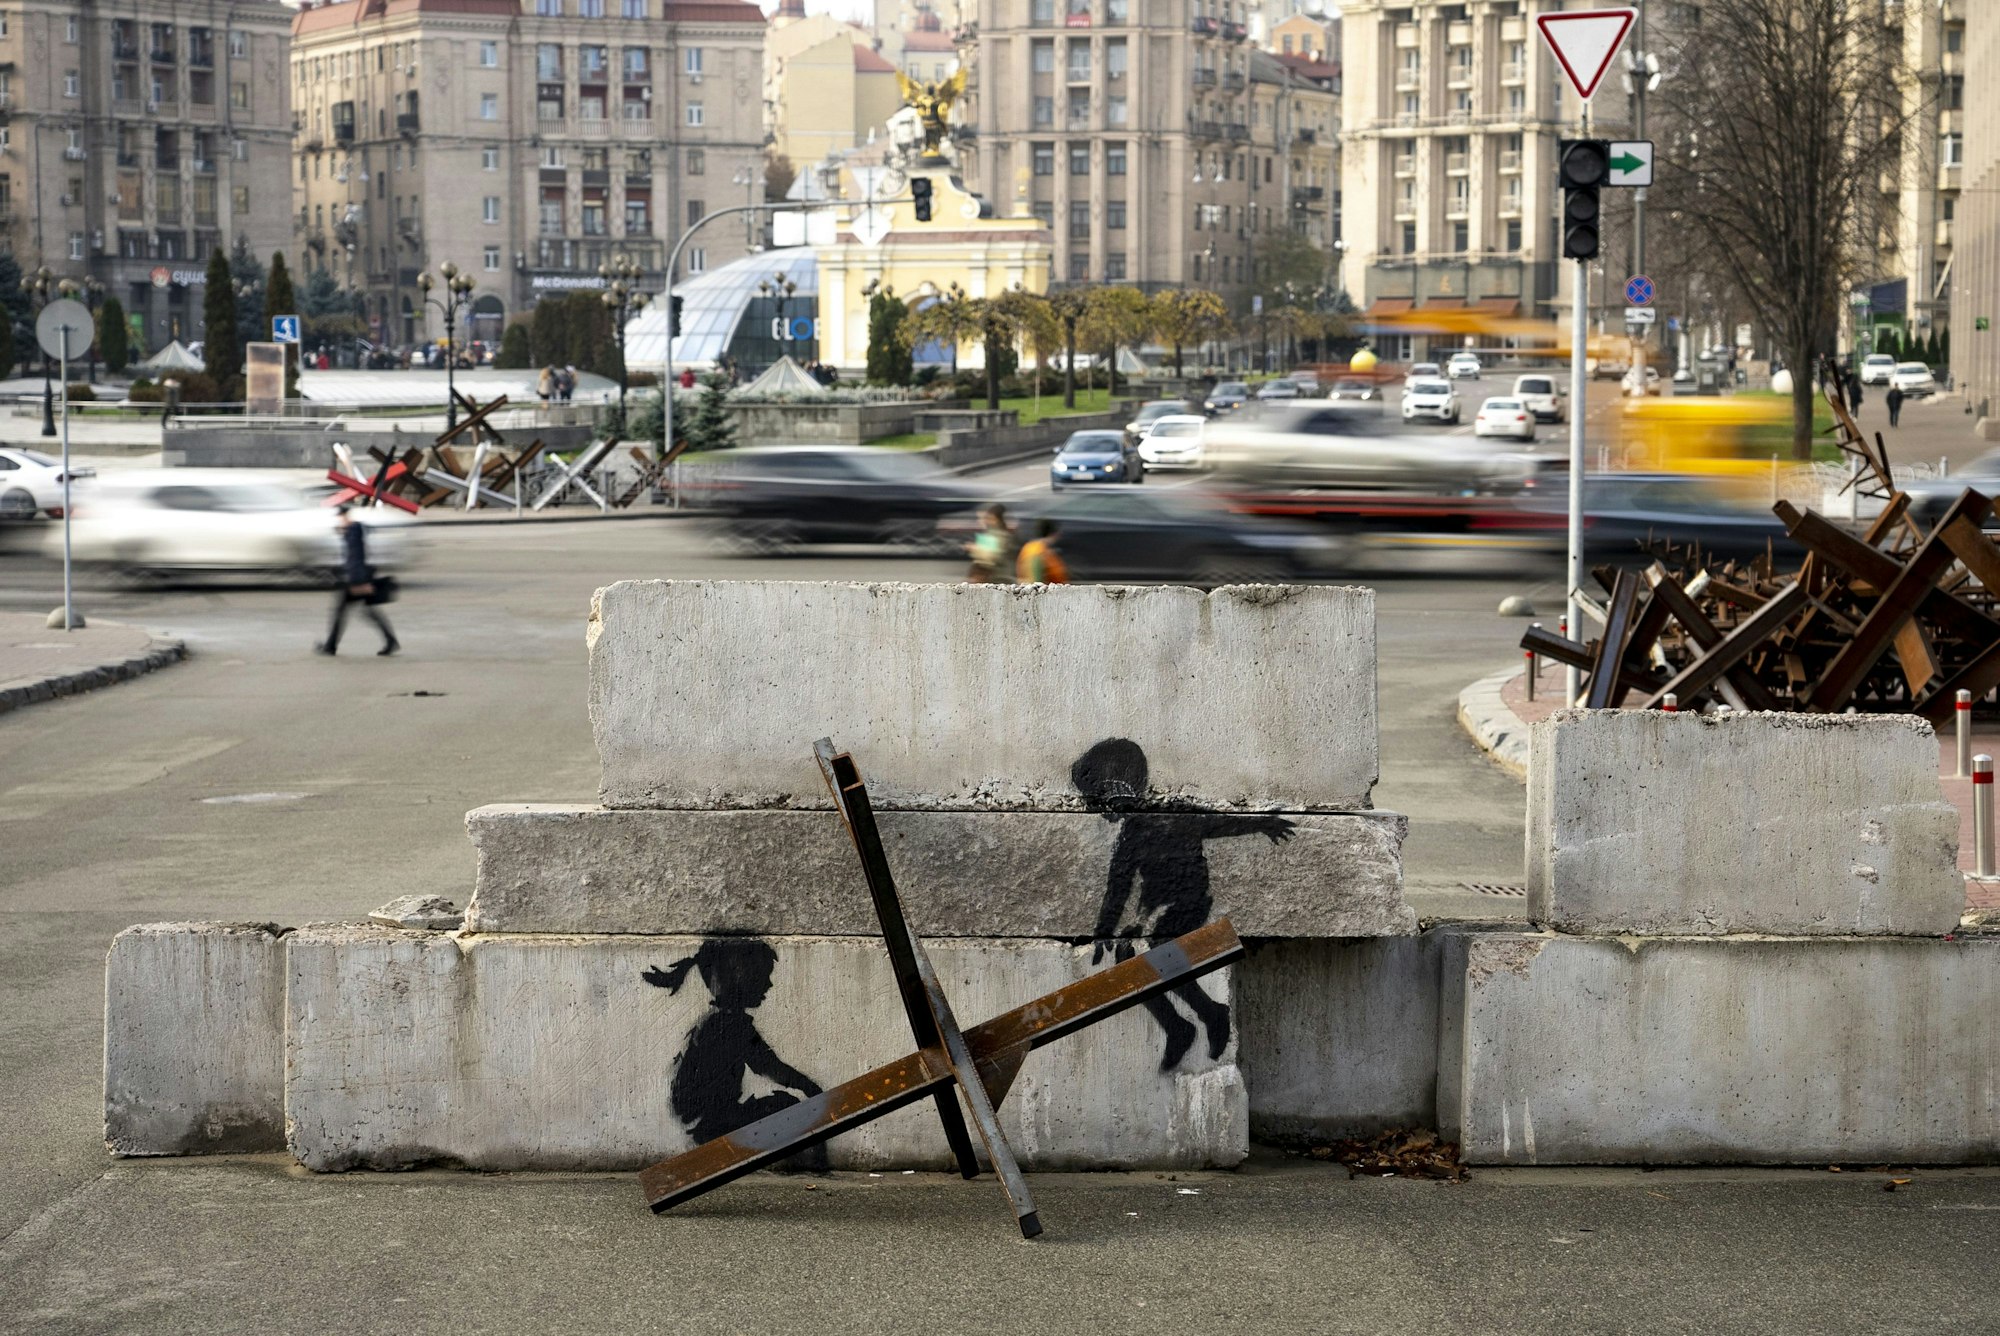 Streetart: Zwei gemalte Kinder sind auf einem Betonblock zu sehen, im Vordergrund ist ein Metallhindernis. Es sieht so aus, als würden die Kinder auf dem Hindernis schaukeln.